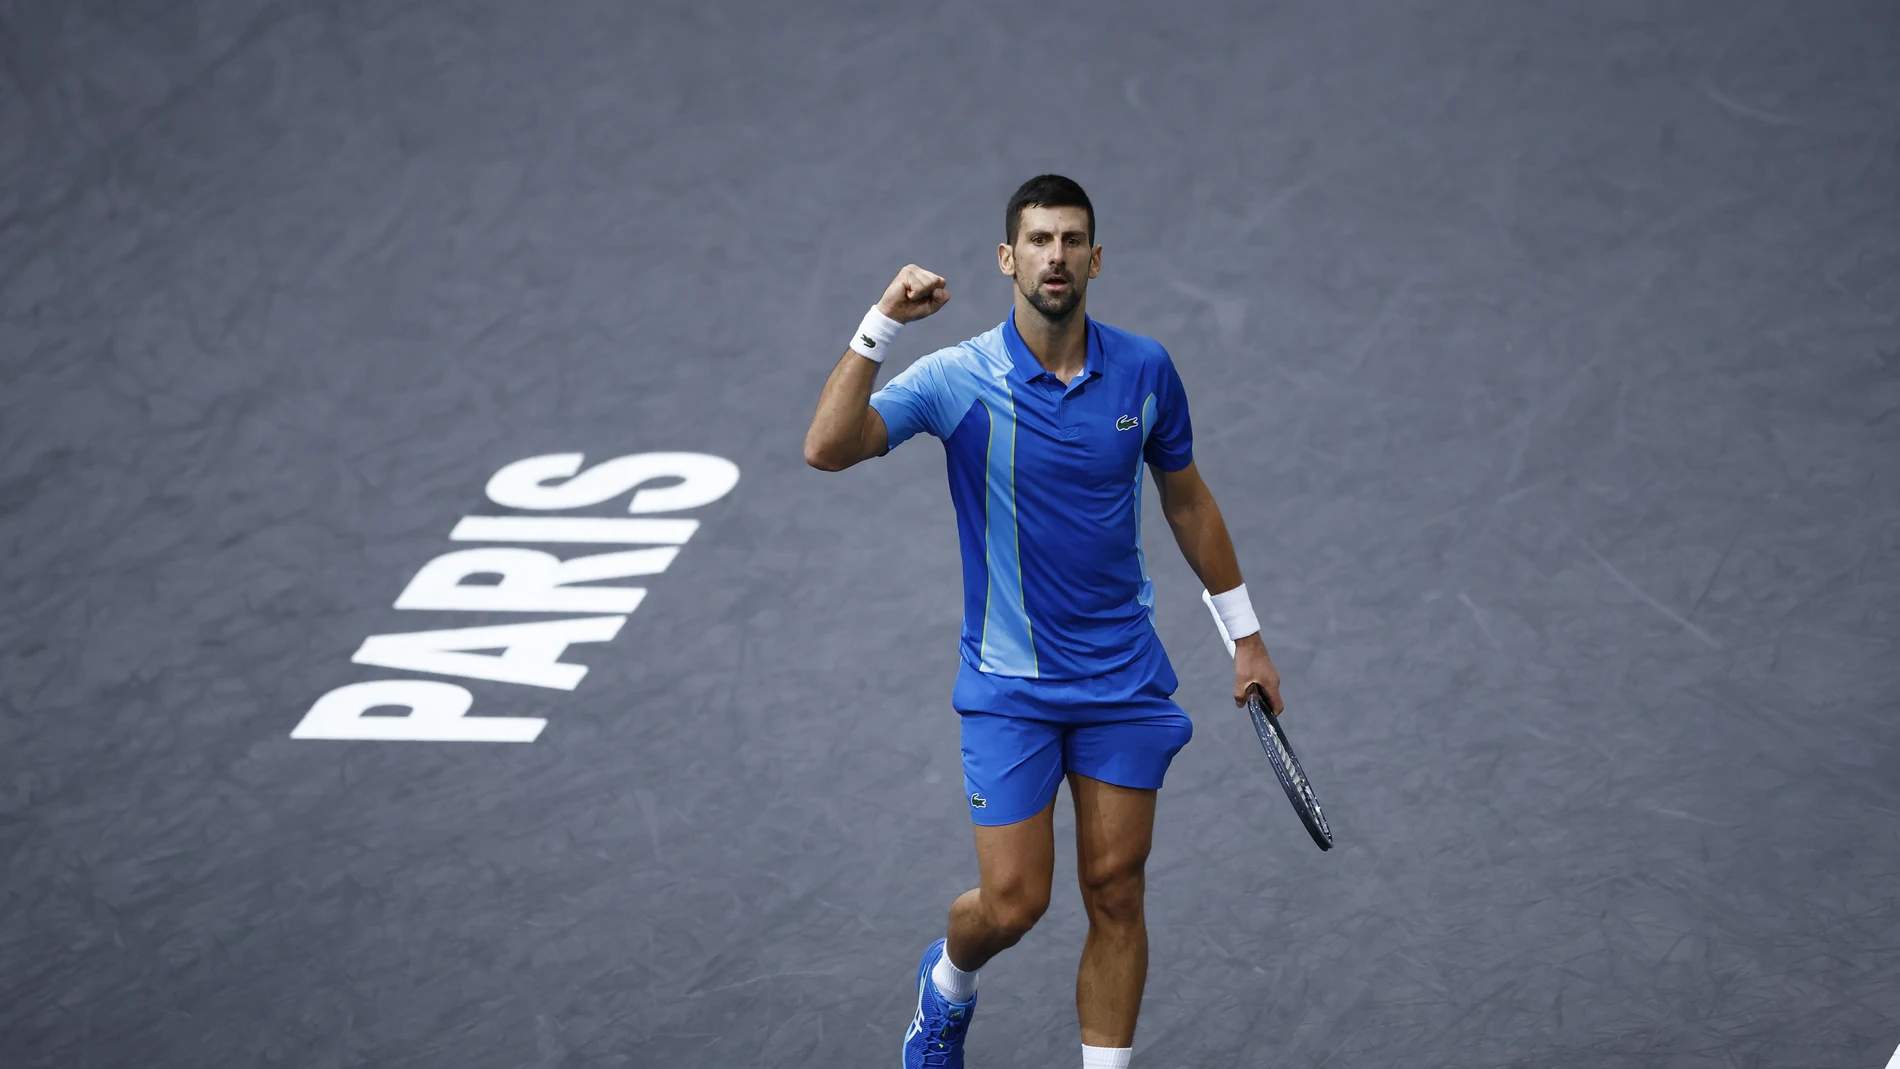 Novak Djokovic celebra un punto en la final del master parisino